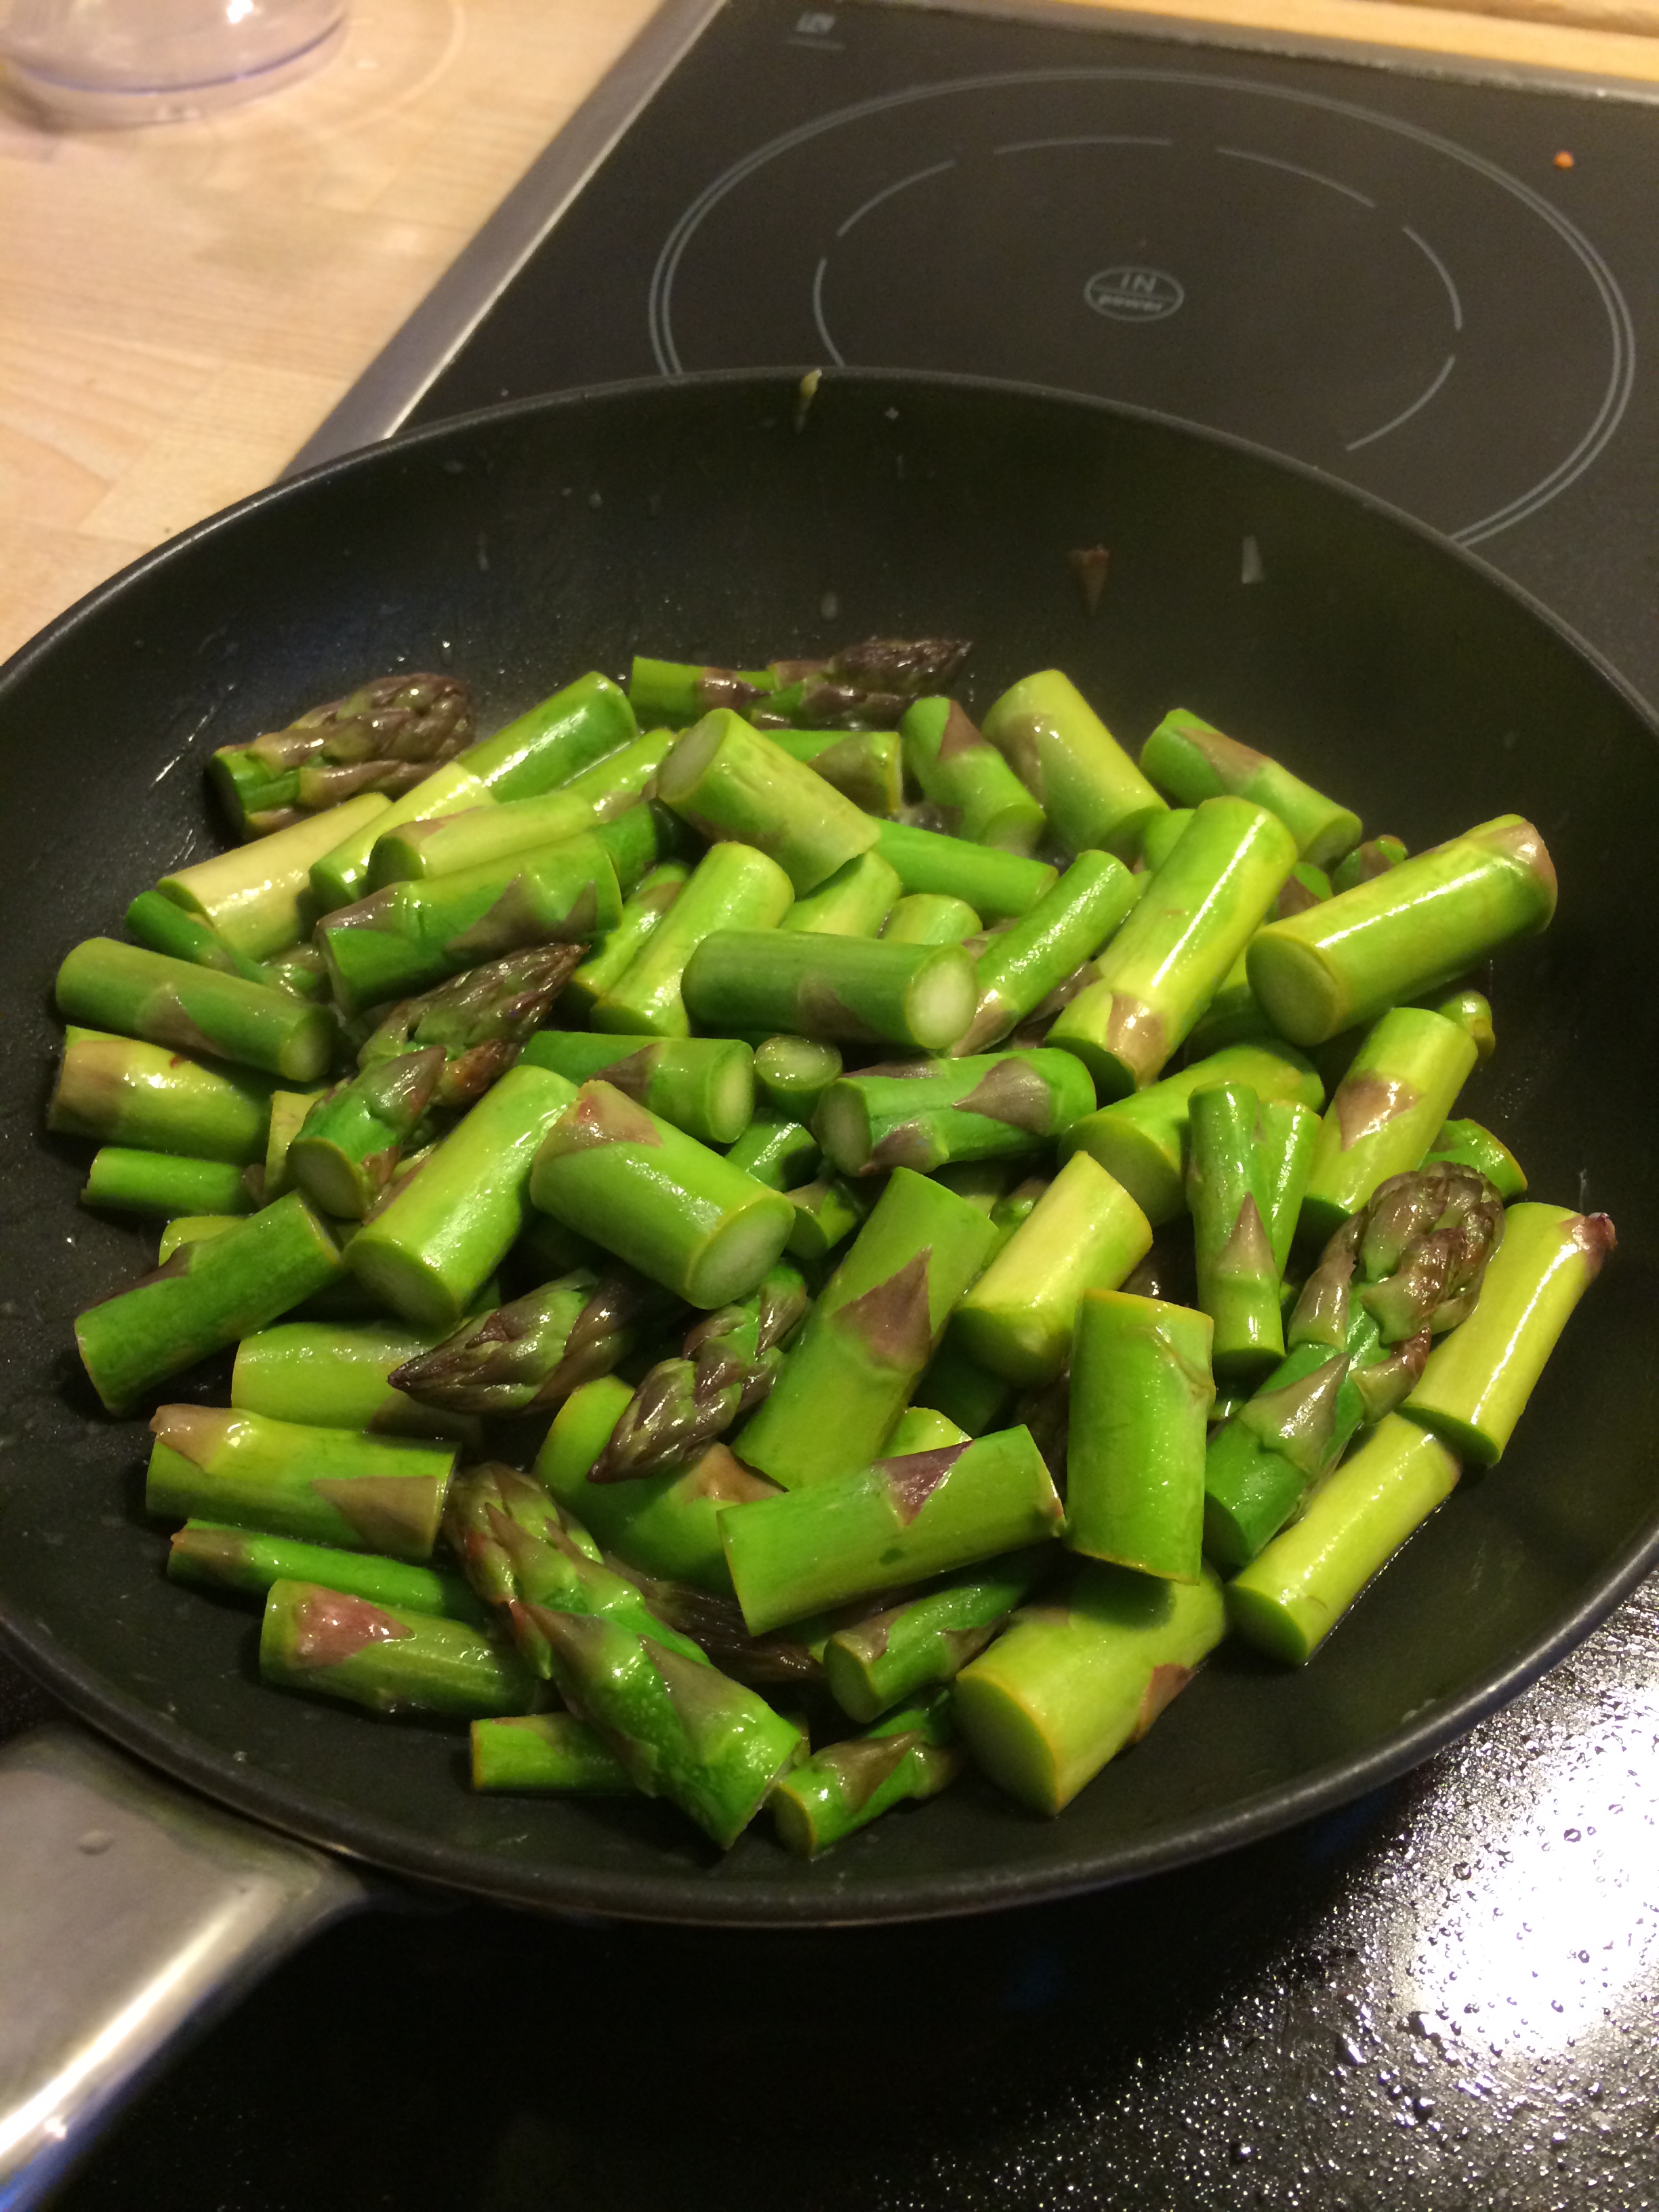 Sautée asparagus with lemon